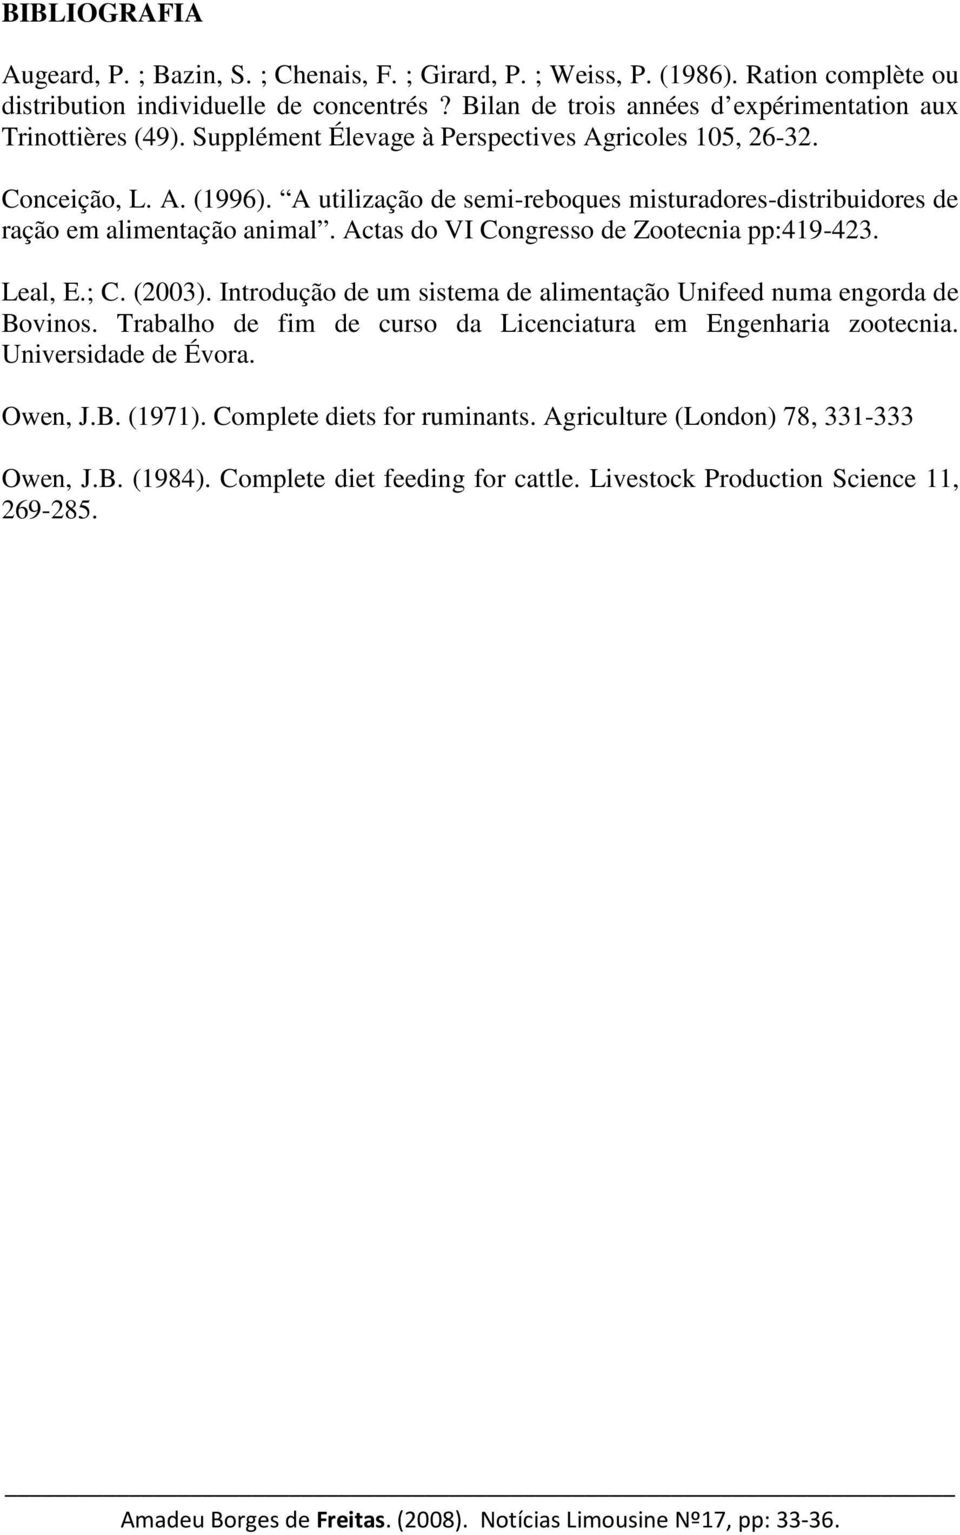 A utilização de semi-reboques misturadores-distribuidores de ração em alimentação animal. Actas do VI Congresso de Zootecnia pp:419-423. Leal, E.; C. (2003).